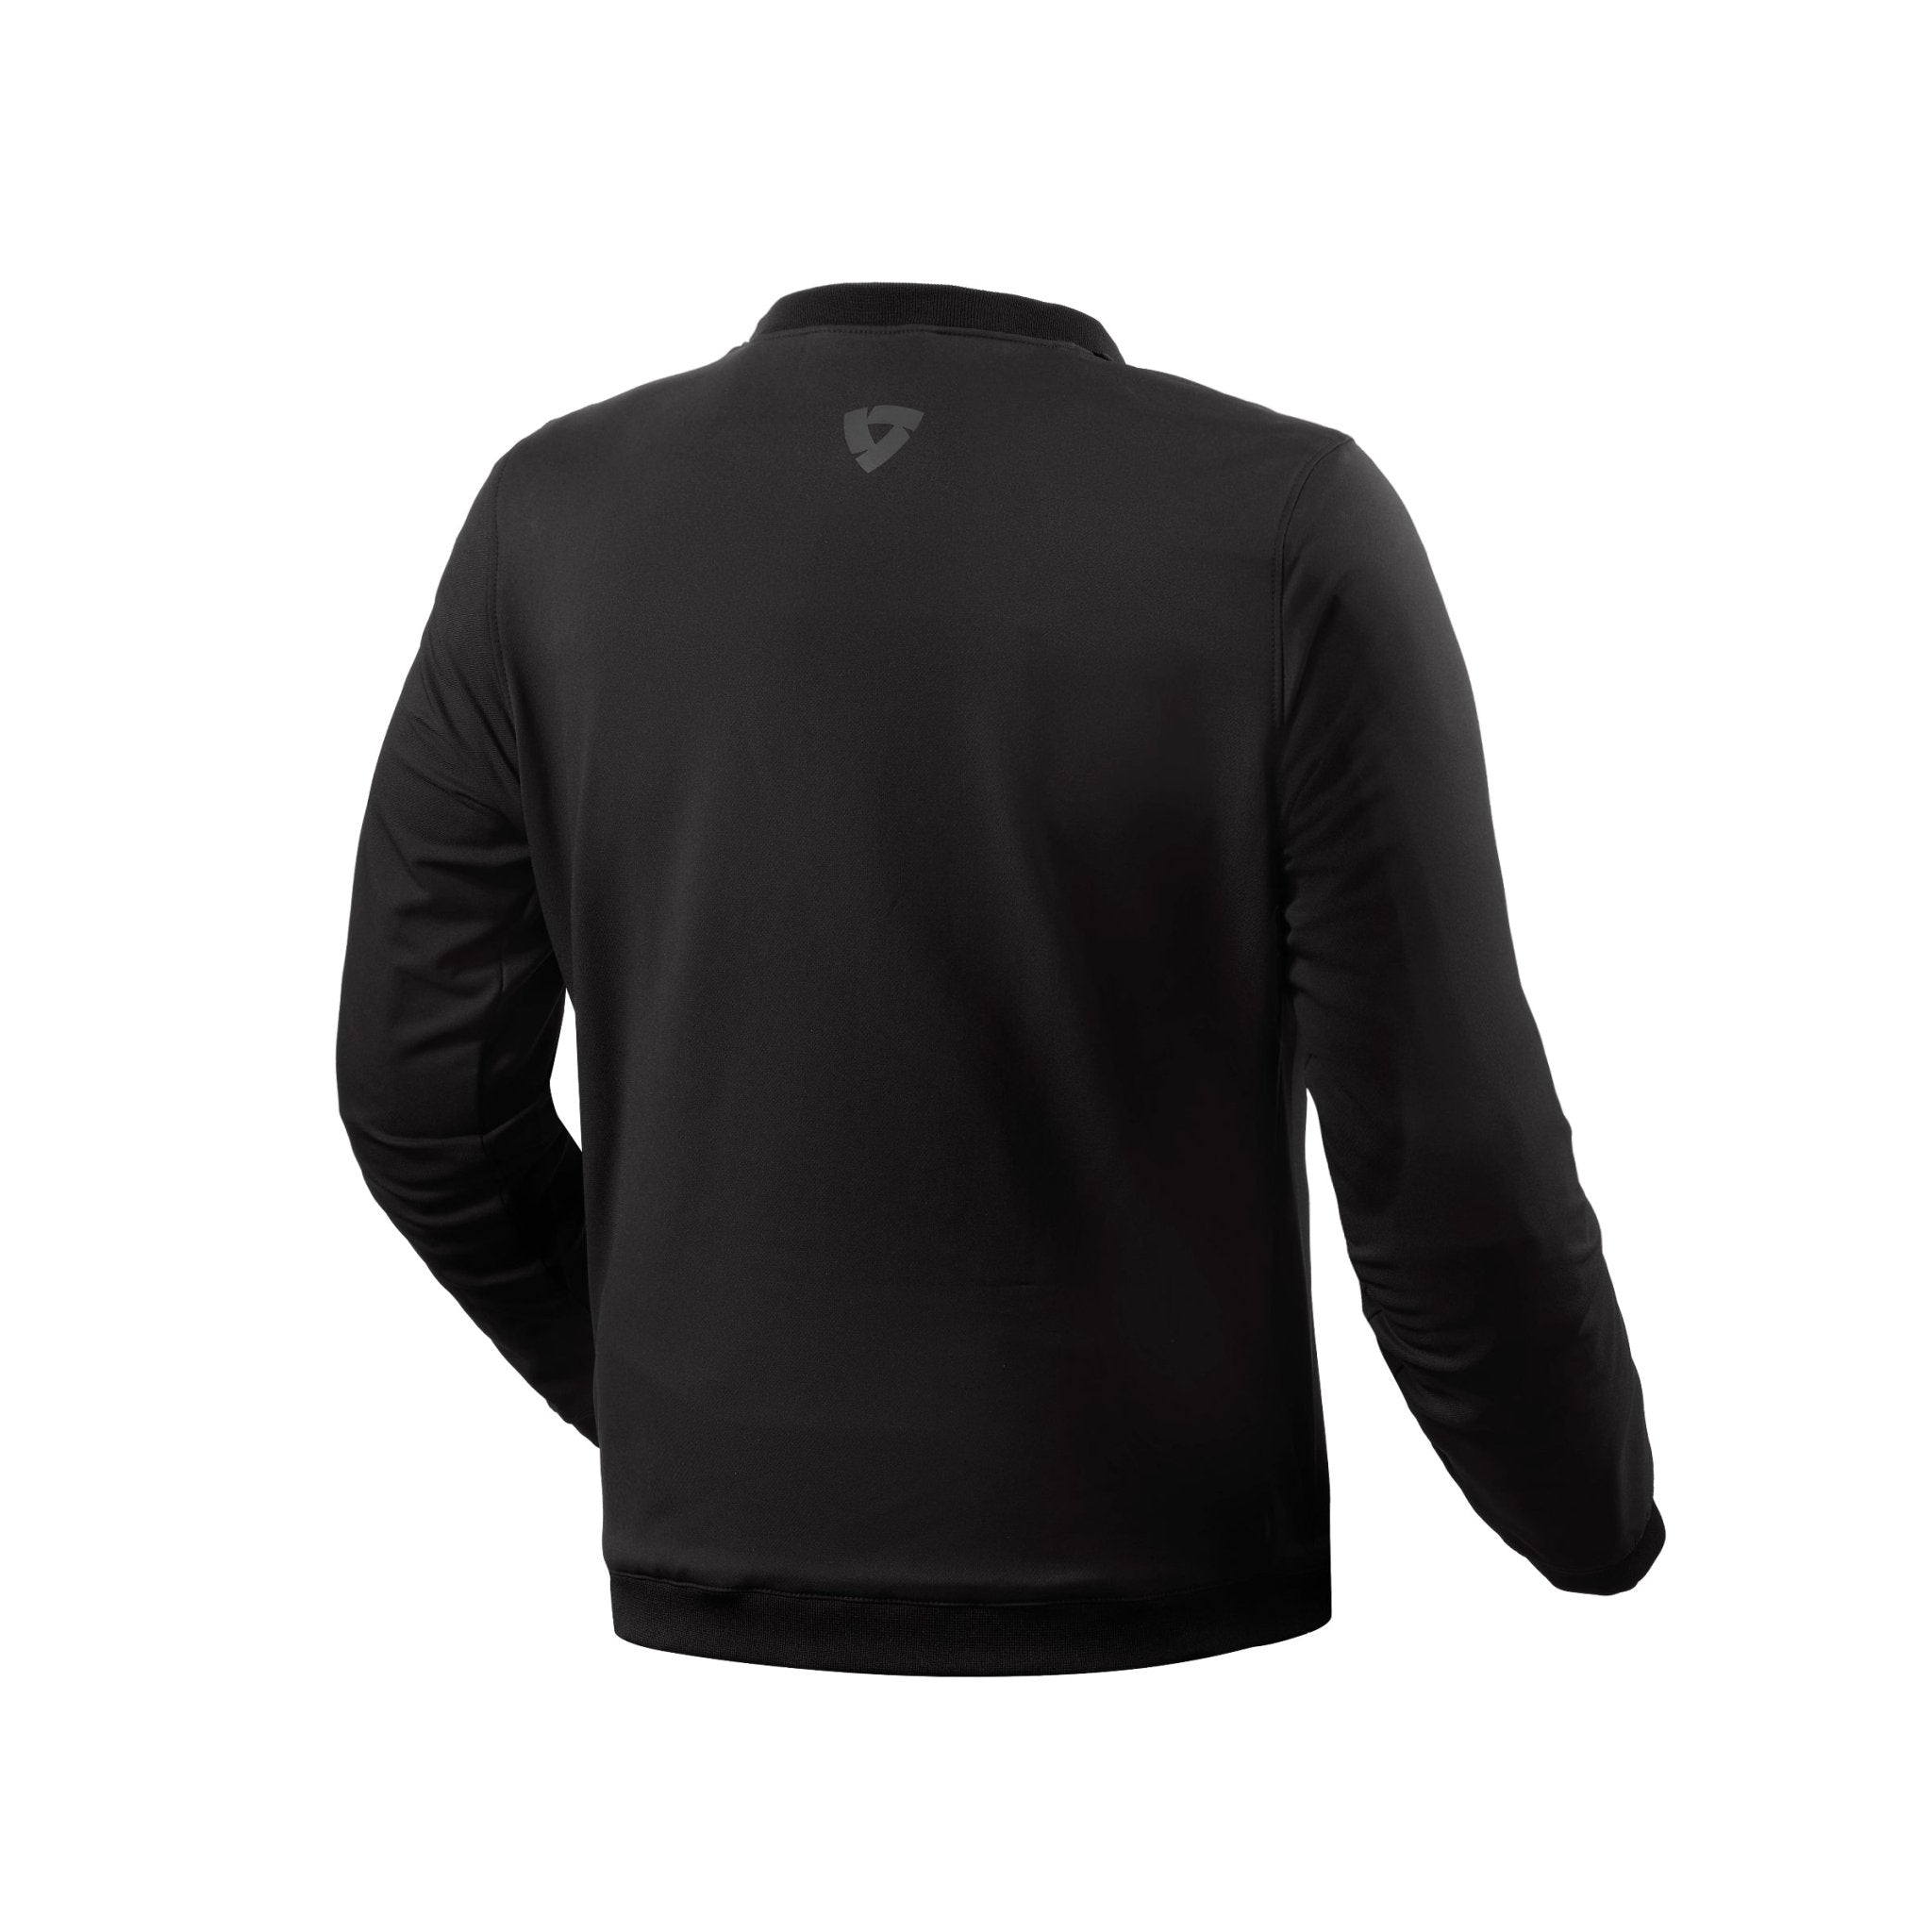 REV'IT! | Crux Sweater - S - Men's Textile Jackets - Peak Moto